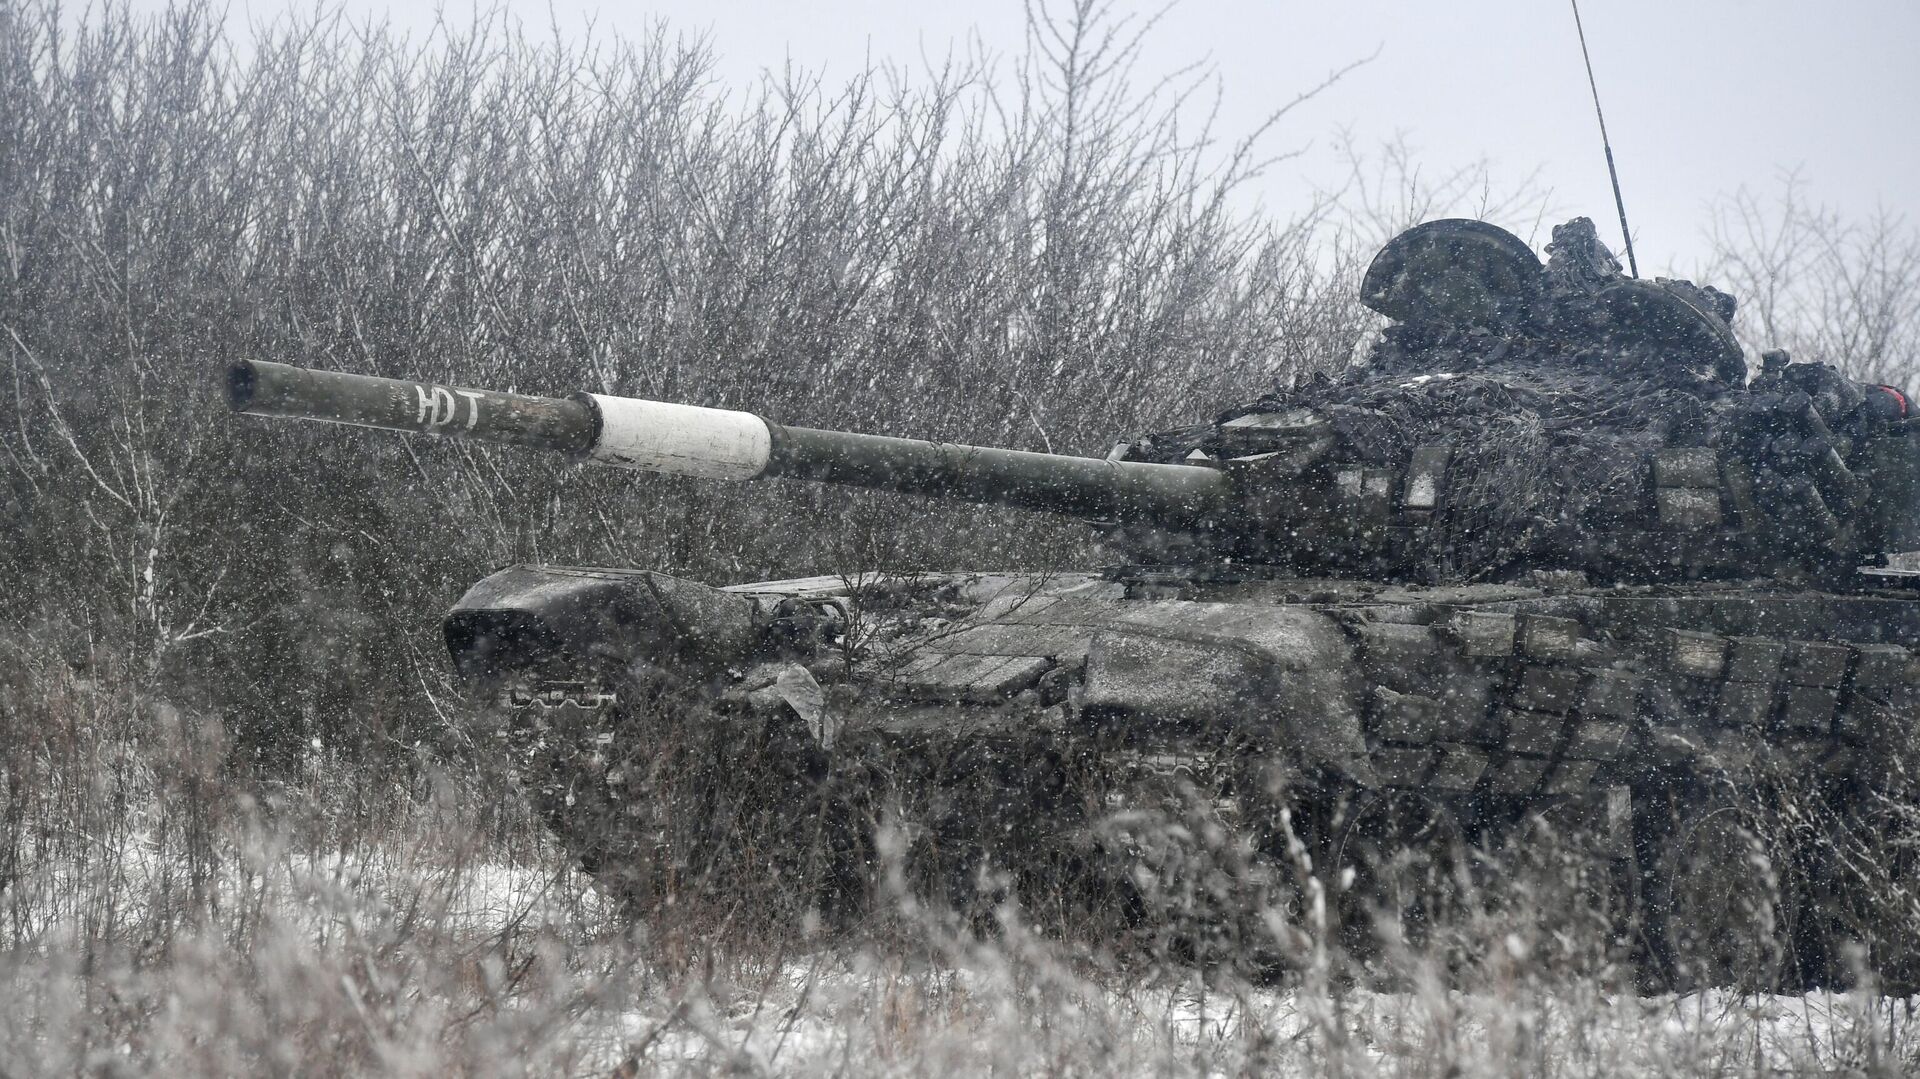 Боевая работа танка Т-72 вооруженных сил РФ в южном секторе специальной военной операции